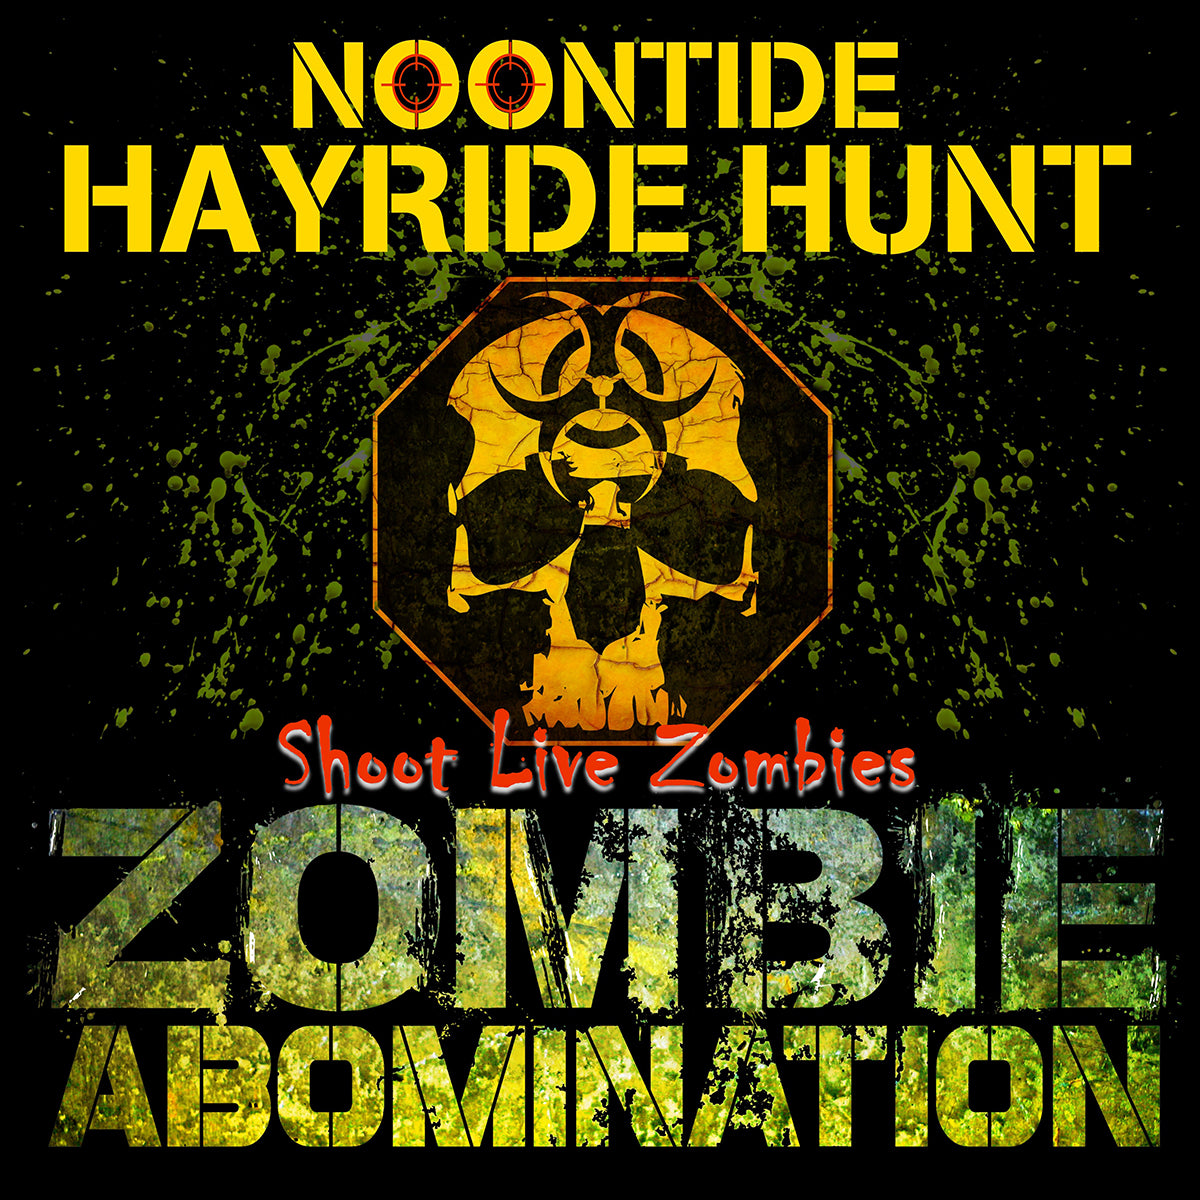 Noontide Zombie Hayride Hunt